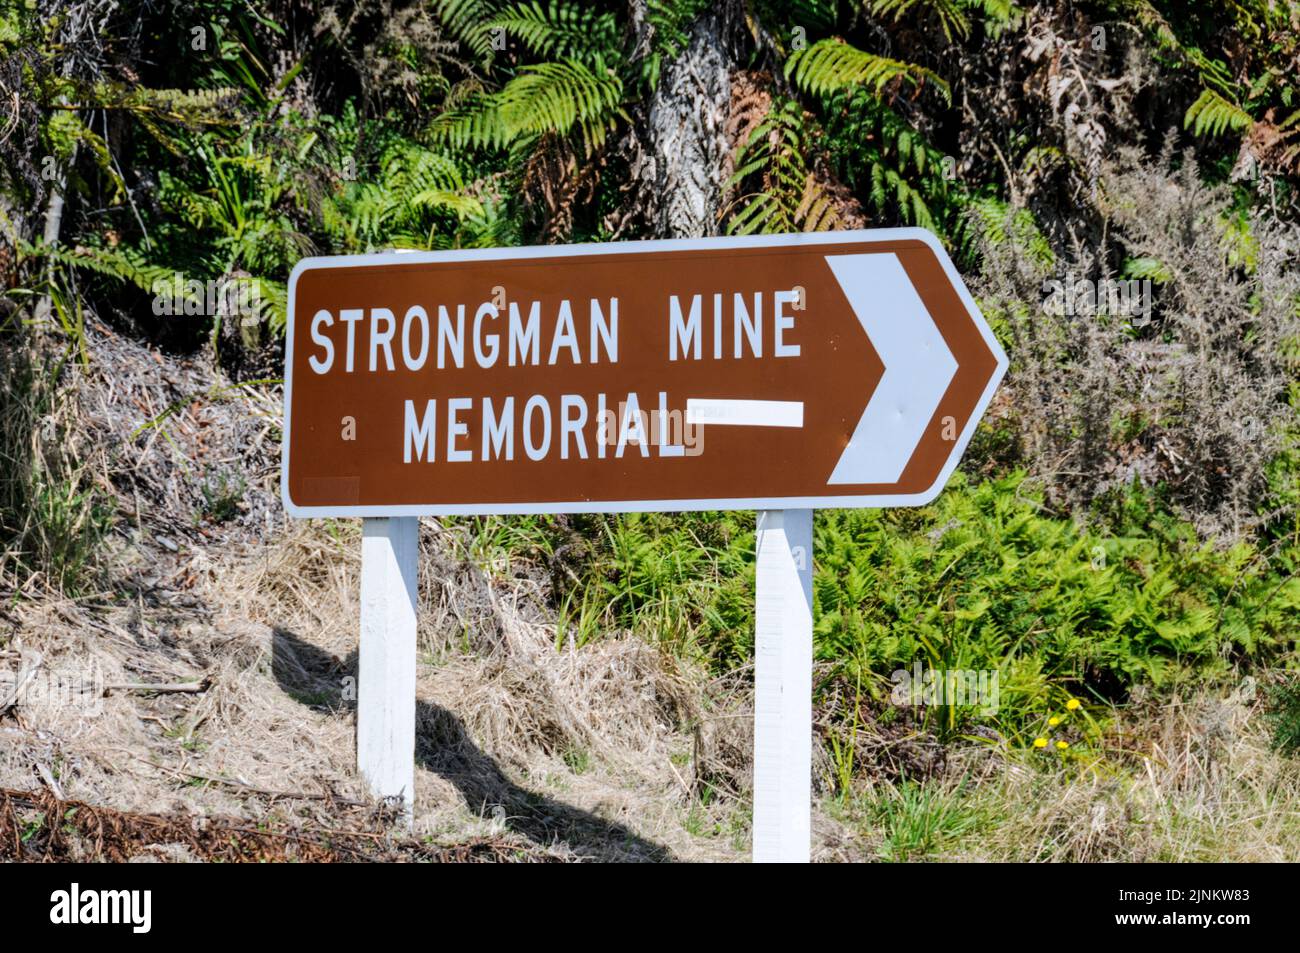 El monumento conmemorativo a la mina Strongman en la autopista estatal 6. ... Fue una mina de carbón subterránea al norte de Greymouth en la costa oeste de Nueva Zelanda de 1938 a 2003 Foto de stock